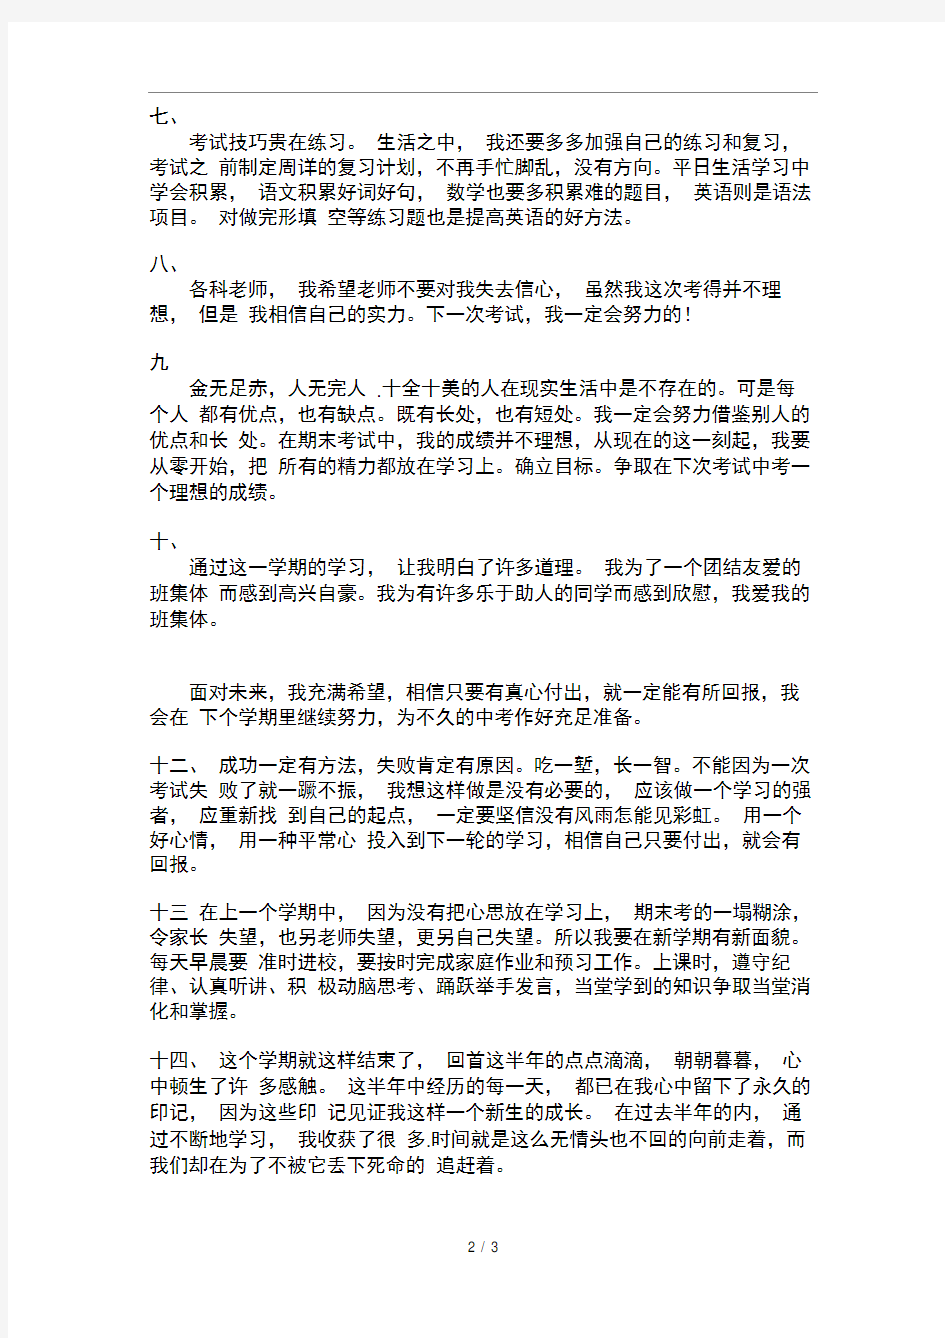 云南省初级中学成长记录手册学生自我反思与评价